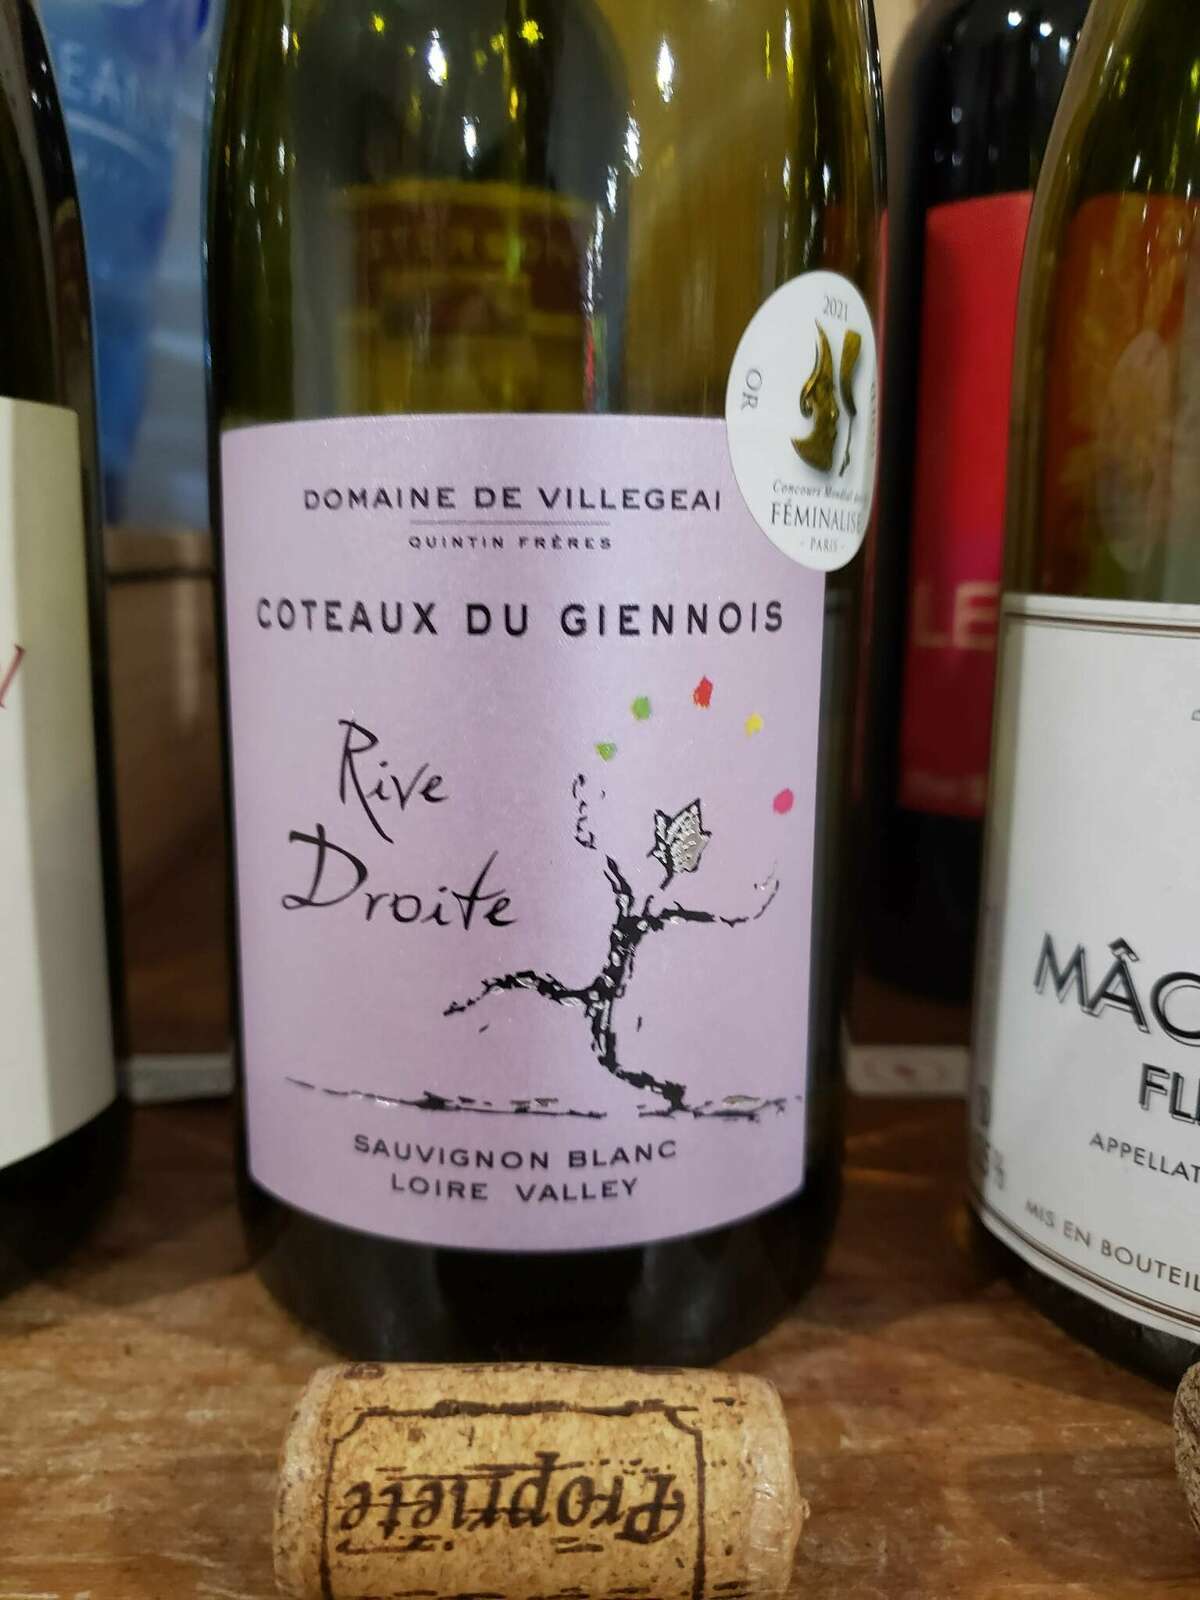 Domaine de Village’ Côteaux du Giennois Rive Droite, was Jim Winston's favorite Thanksgiving white at the DB Fine Wines tasting. 